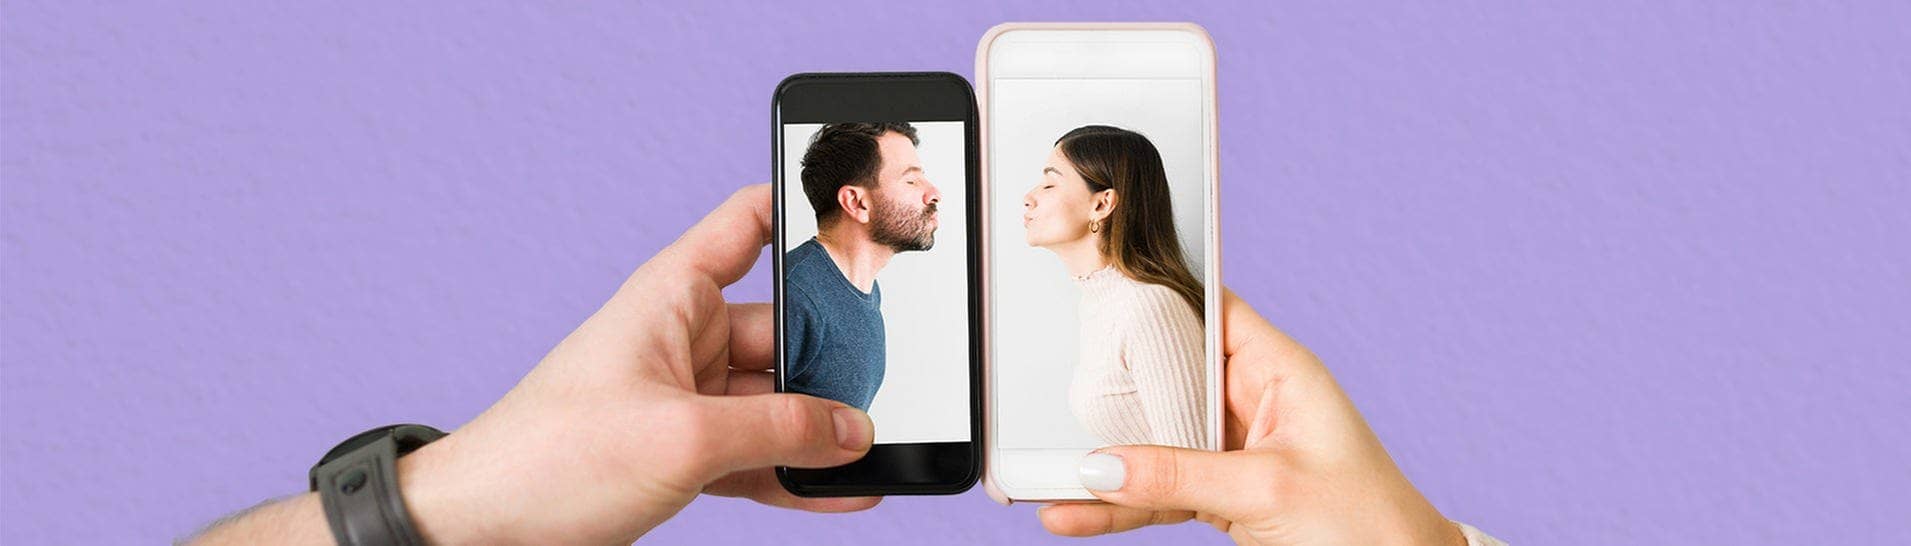 Zwei Menschen halten Smartphones aneinander. Darauf zu sehen sind ein Mann und eine Frau, die einen Kussmund formen. (Foto: Adobe Stock/Antionio Diaz)